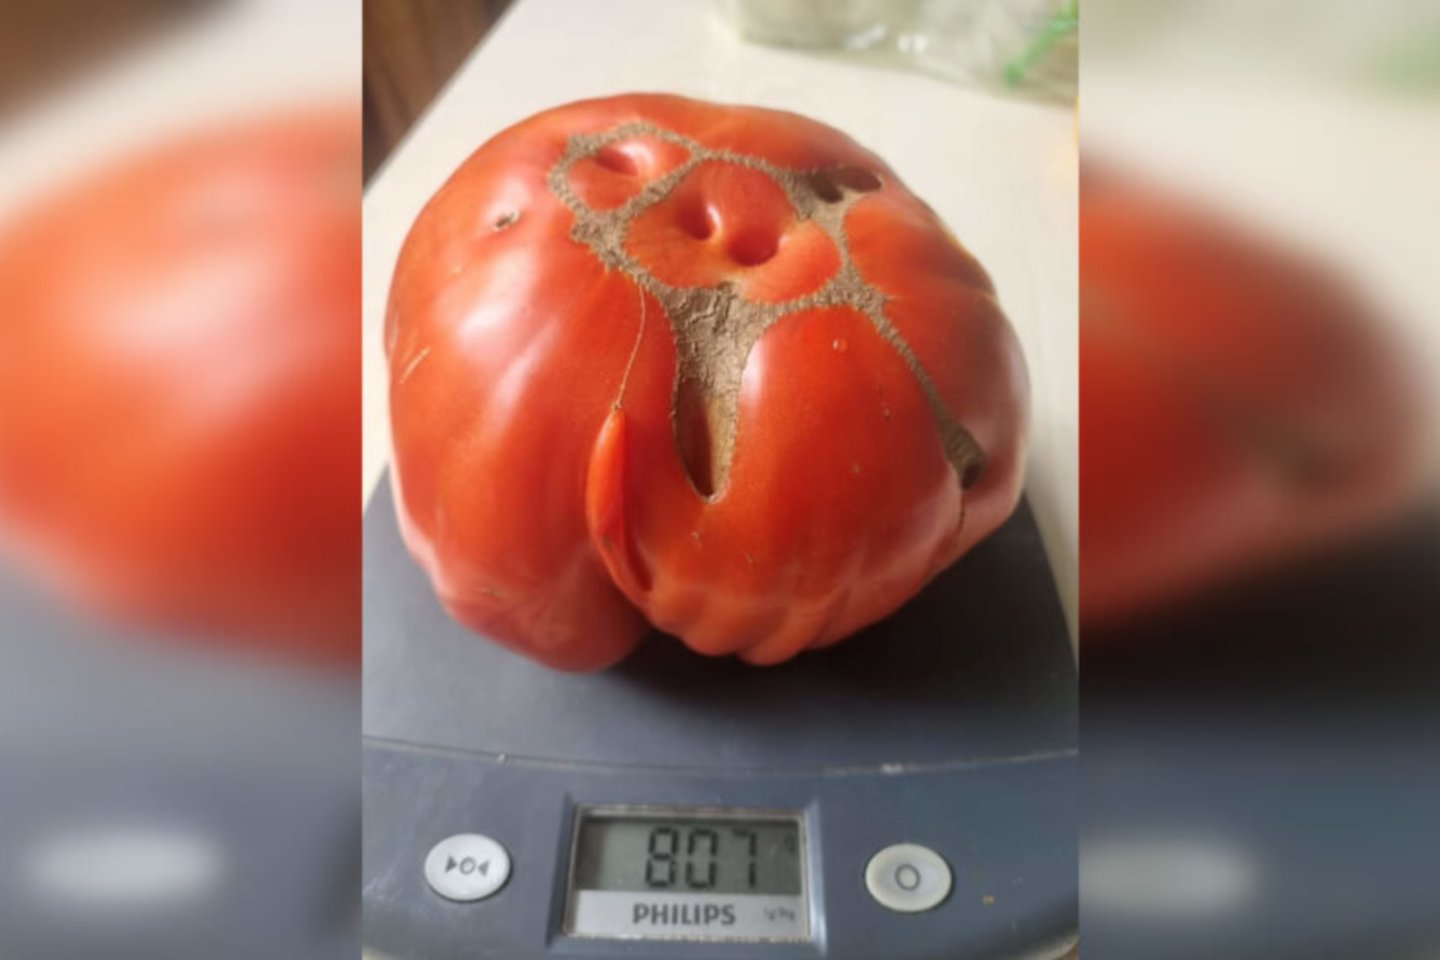 Vieno pomidoro svoris siekia daugiau nei 800 gramų. Kur tai matyta – beveik kilograminis pomidoras!<br>Asmenino archyvo nuotr.